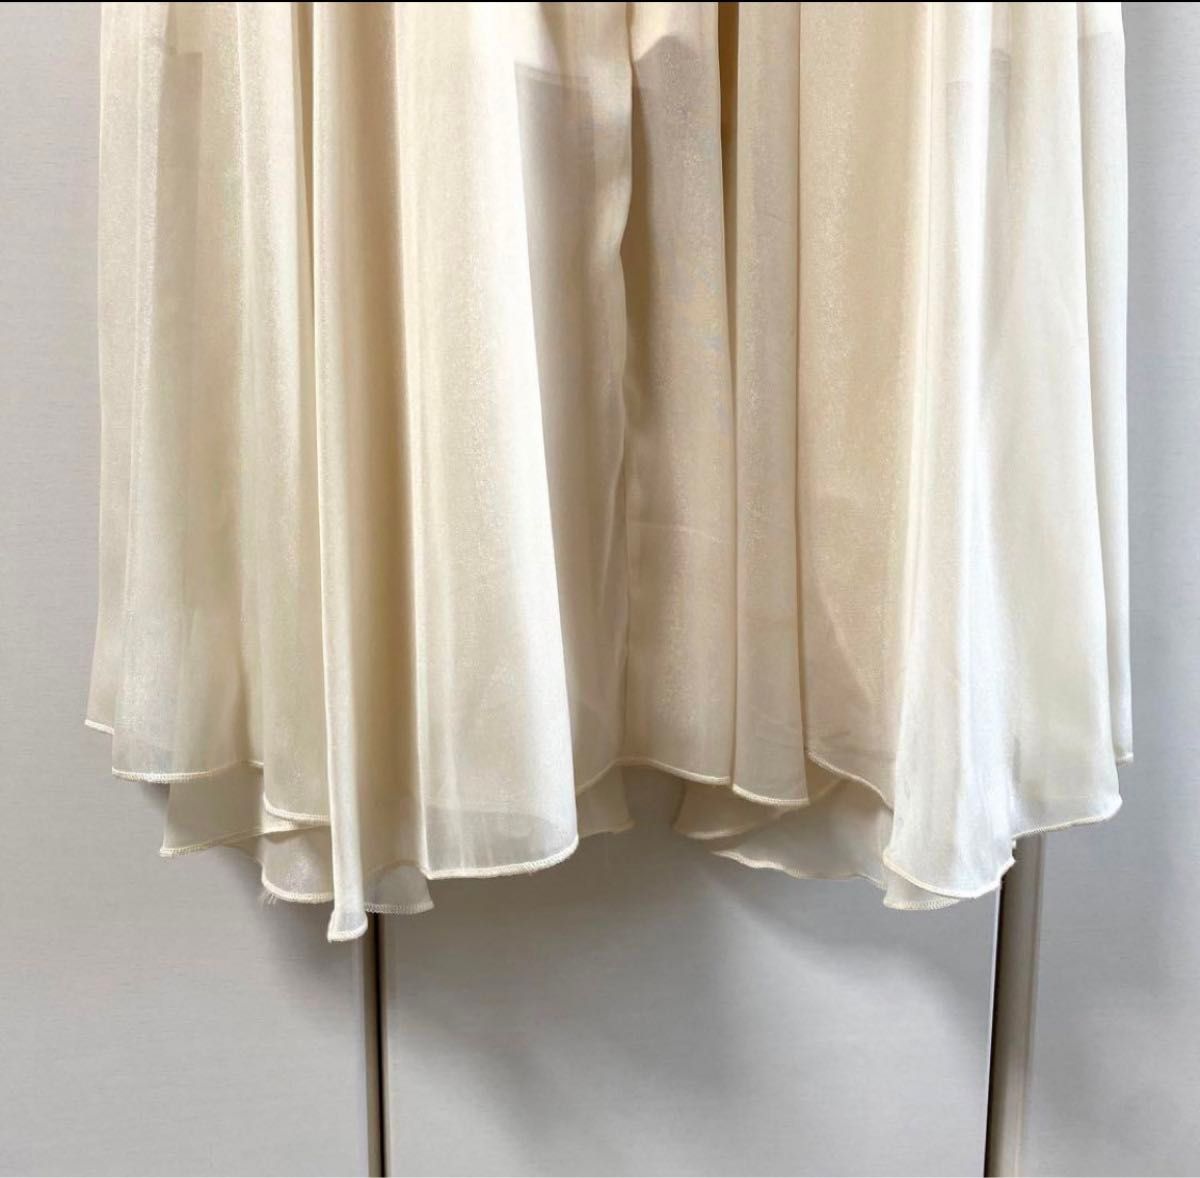 チューリップロングスカート2 OLIVE des OLIVE フレアスカート 白 オフホワイト アイボリー ロングスカート 訳あり